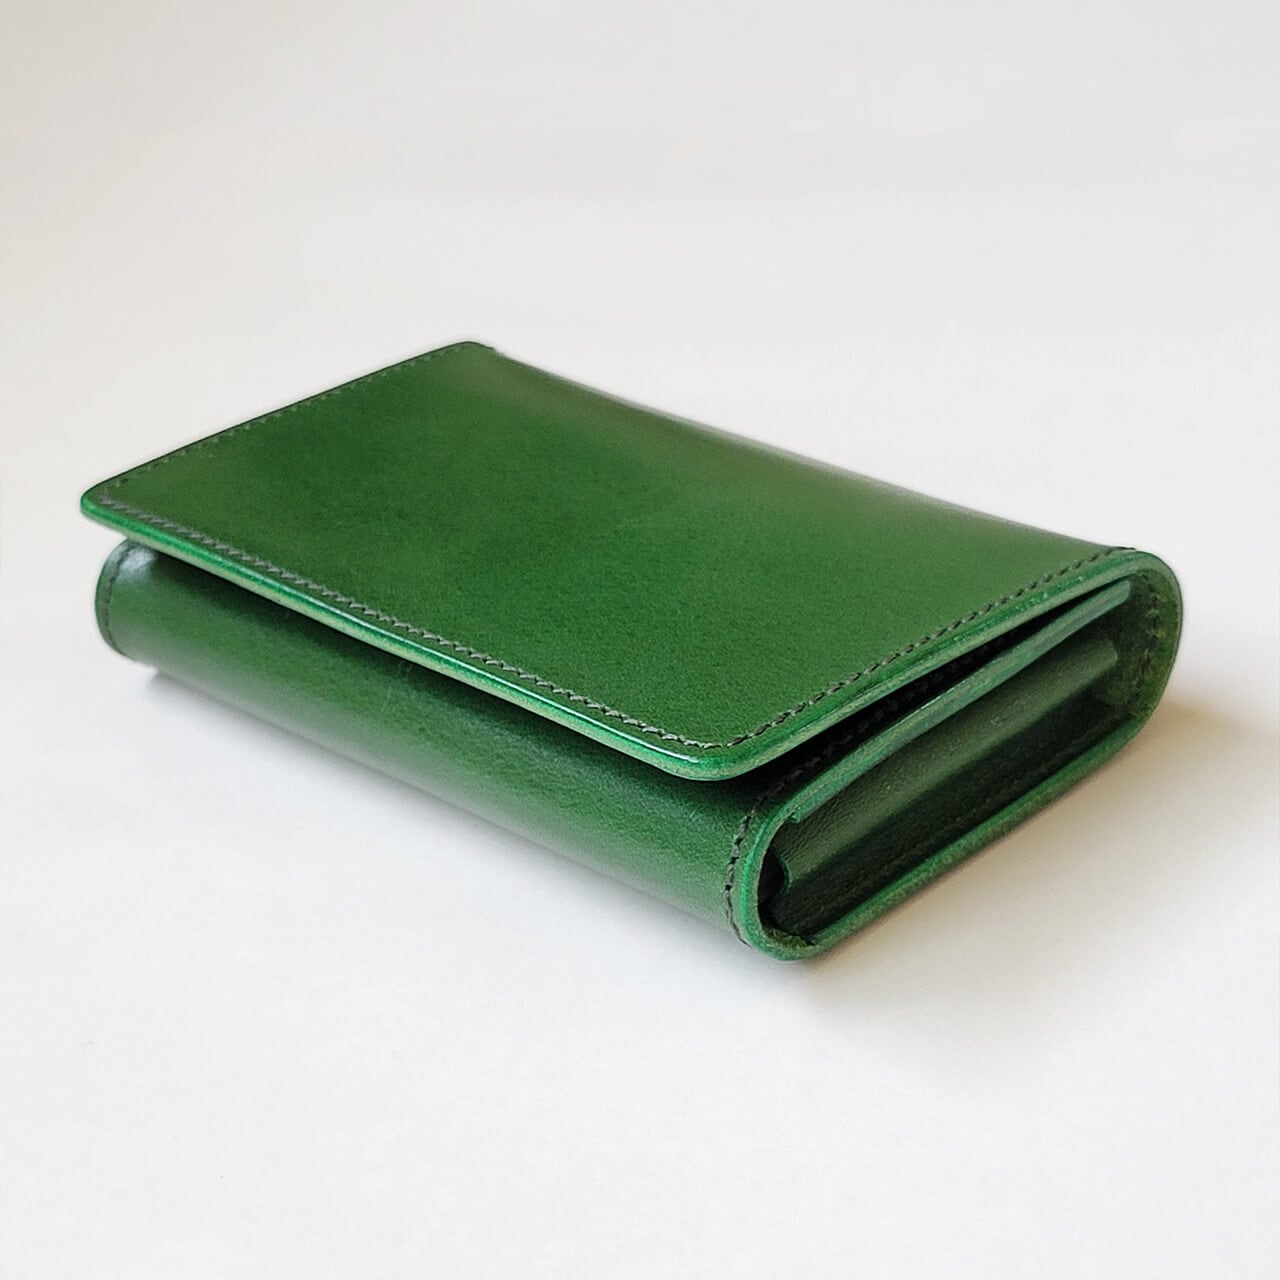 大容量名刺入れ グリーン Leather+(レザープラス) シンプルで少しレトロな革小物